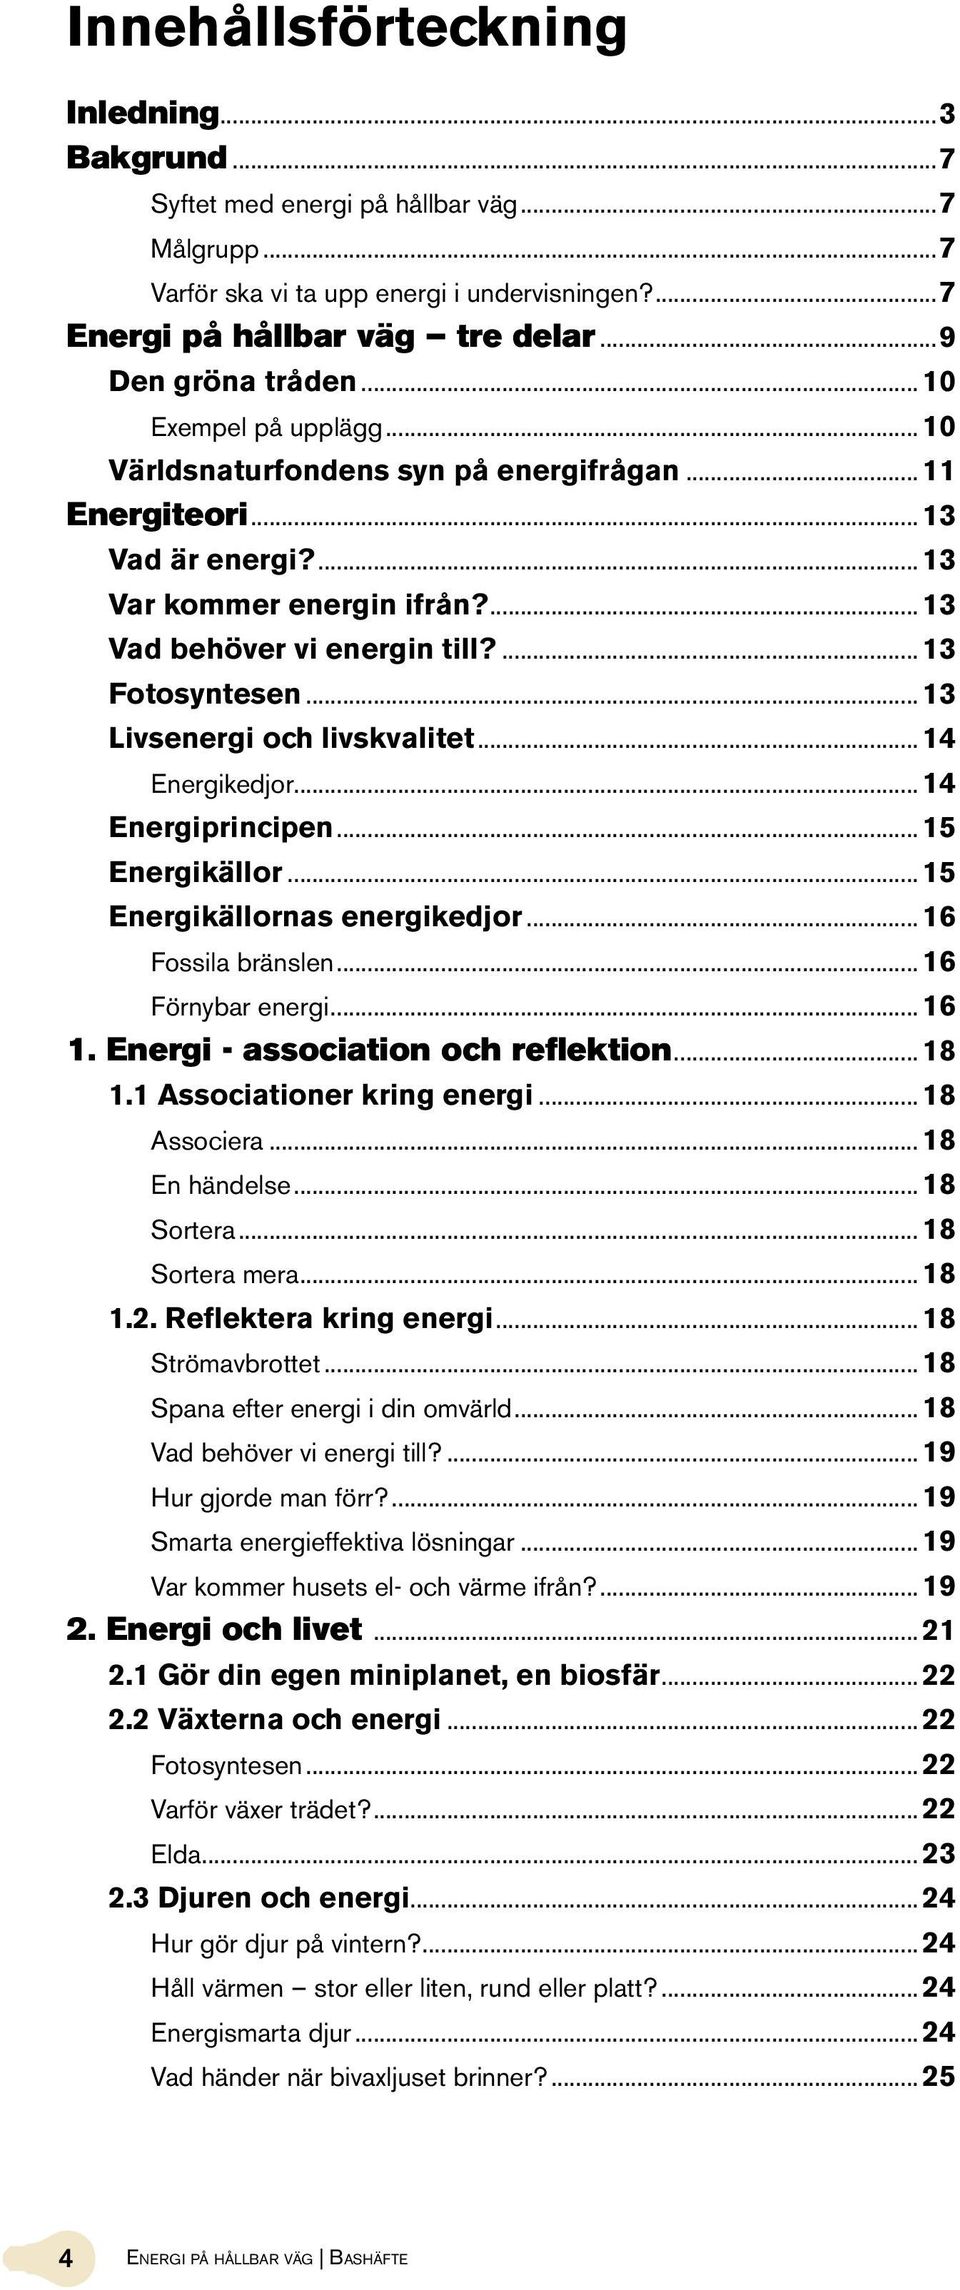 .. 13 Livsenergi och livskvalitet... 14 Energikedjor... 14 Energiprincipen... 15 Energikällor... 15 Energikällornas energikedjor... 16 Fossila bränslen... 16 Förnybar energi... 16 1.